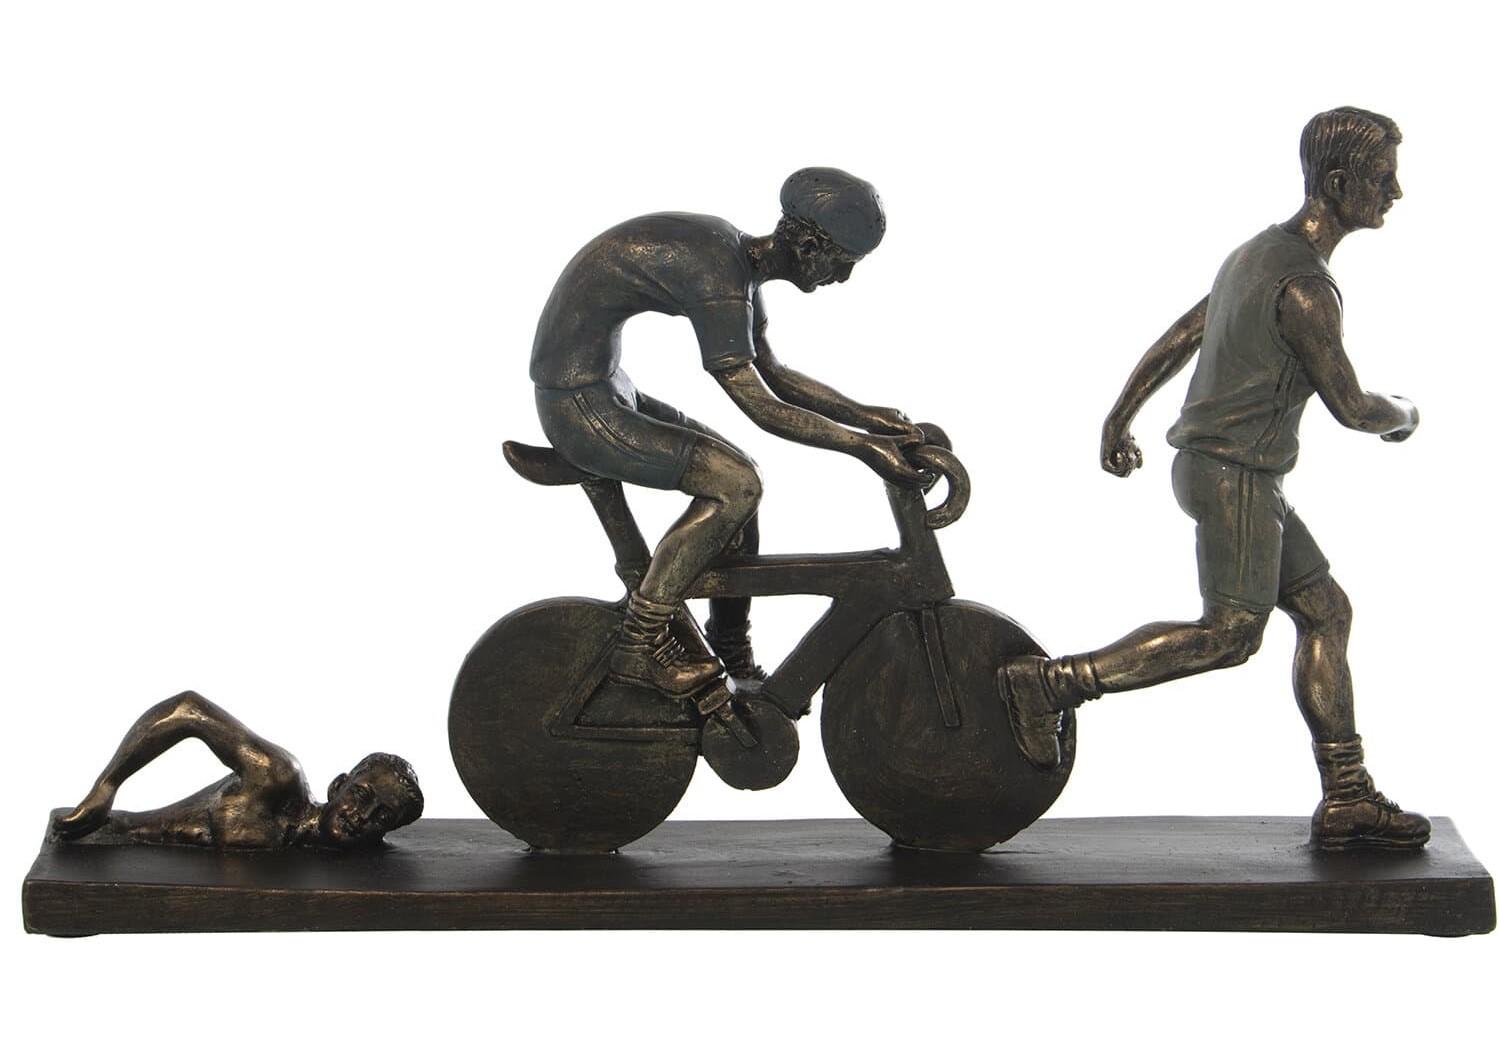 49286-triatlon-figura-resina-decoracion-bronce-exclusivas-camacho-regalo-deporte-lomejorsg.jpg